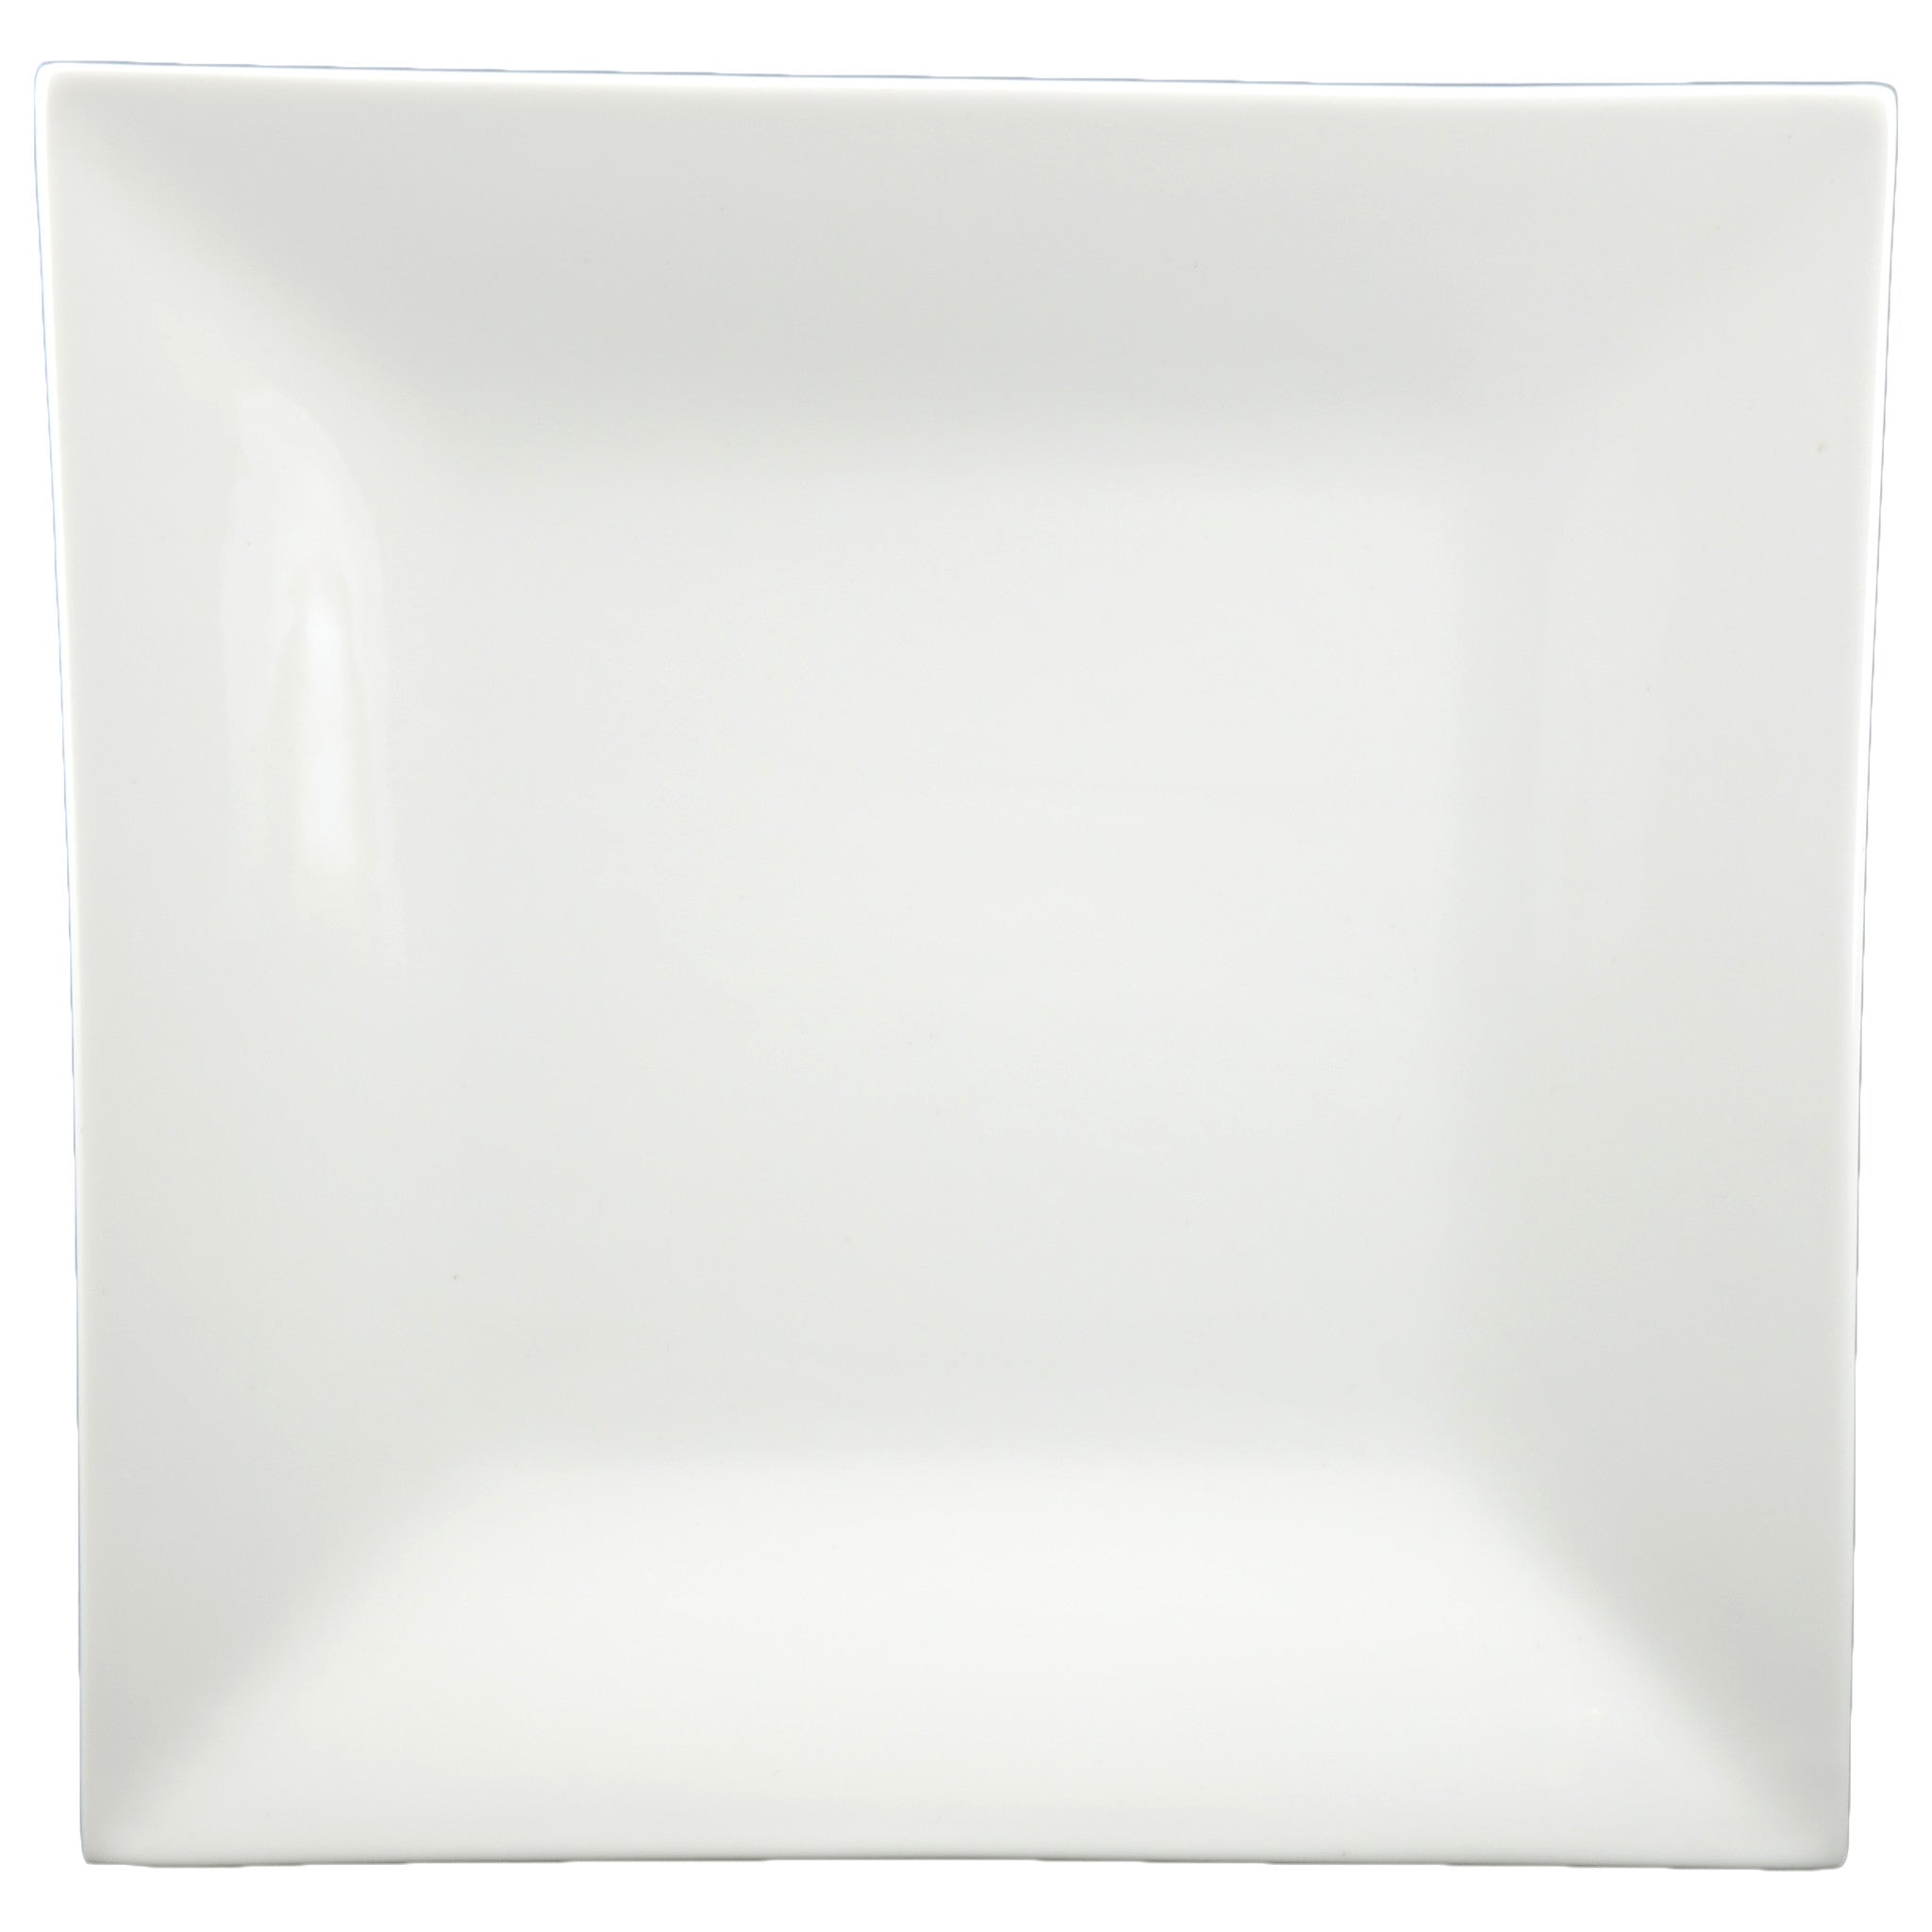 White Tie Classic Square Plate, 10"